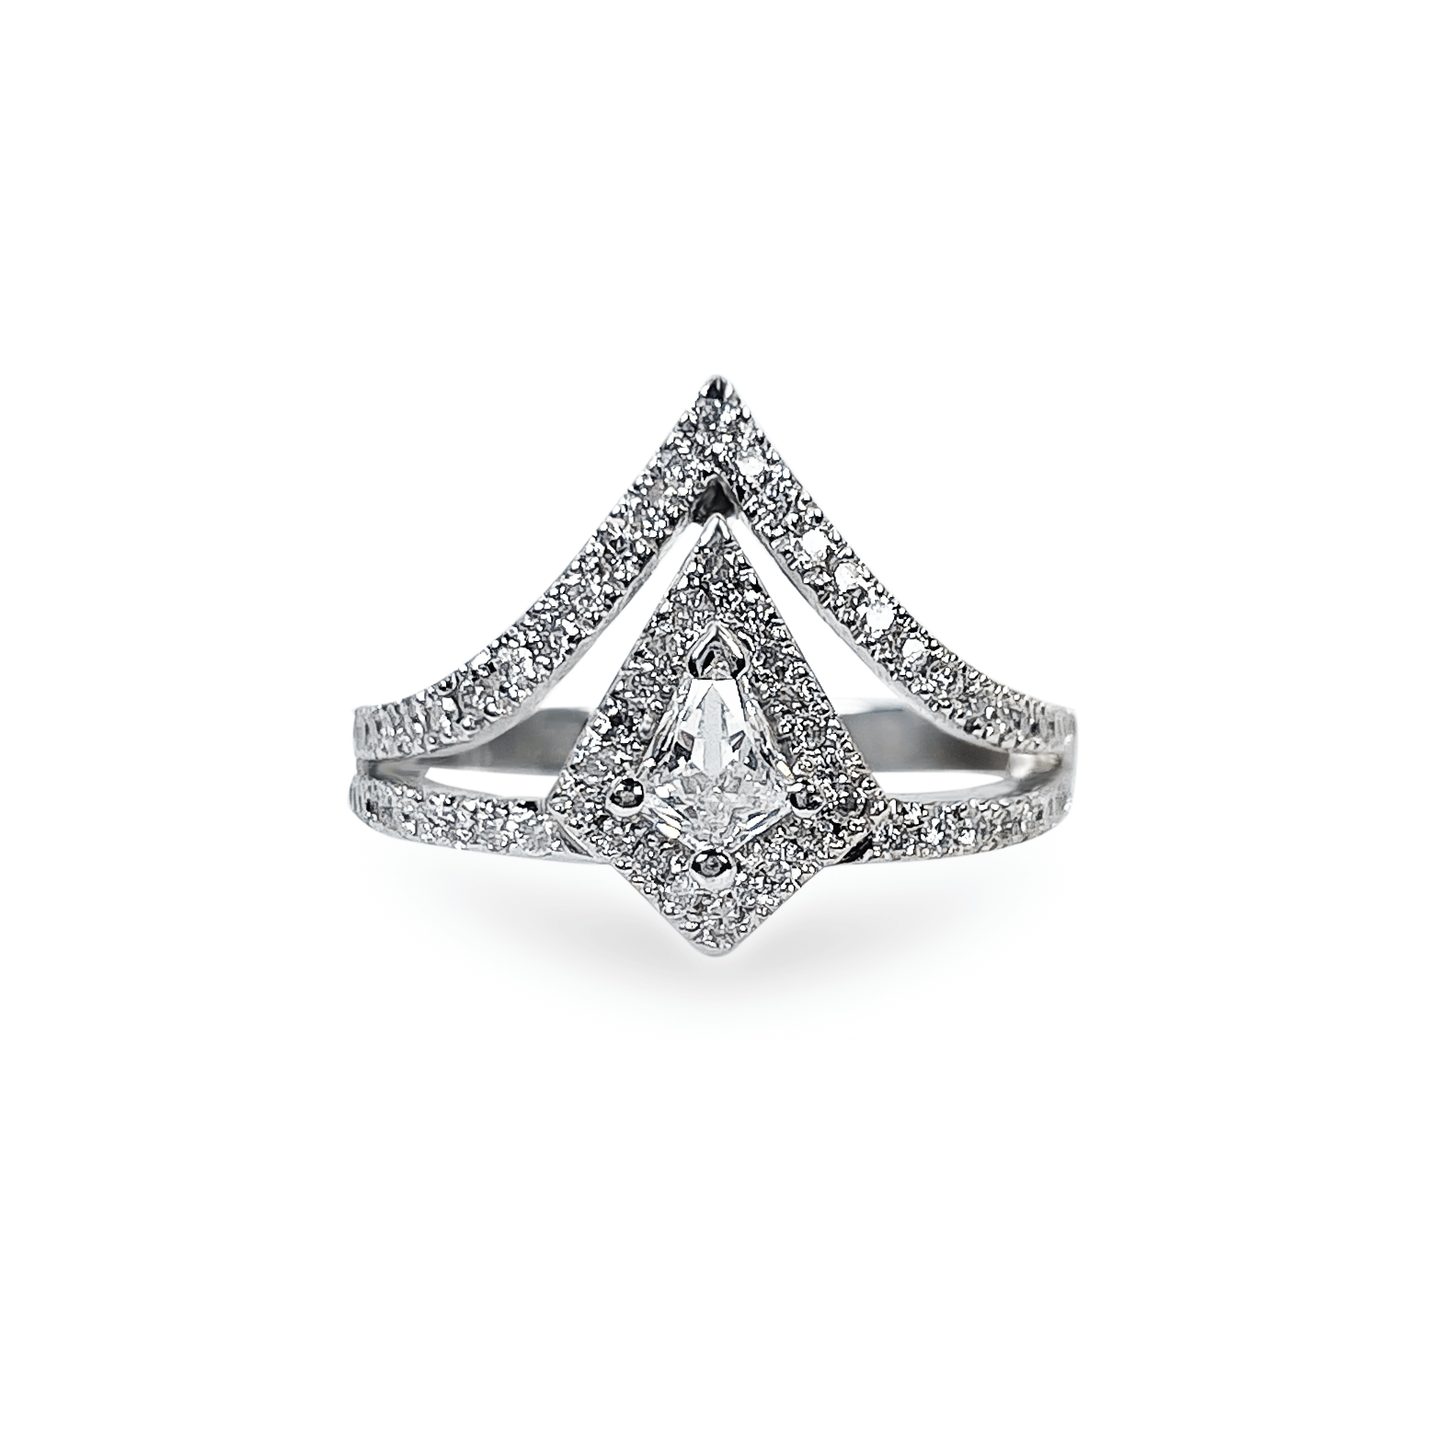 1.11 ctw Crown Ring with Kite Shaped Diamond in 18k White Gold- جرس - Luxury Diamond Jewelry shop Dubai - SABA DIAMONDS